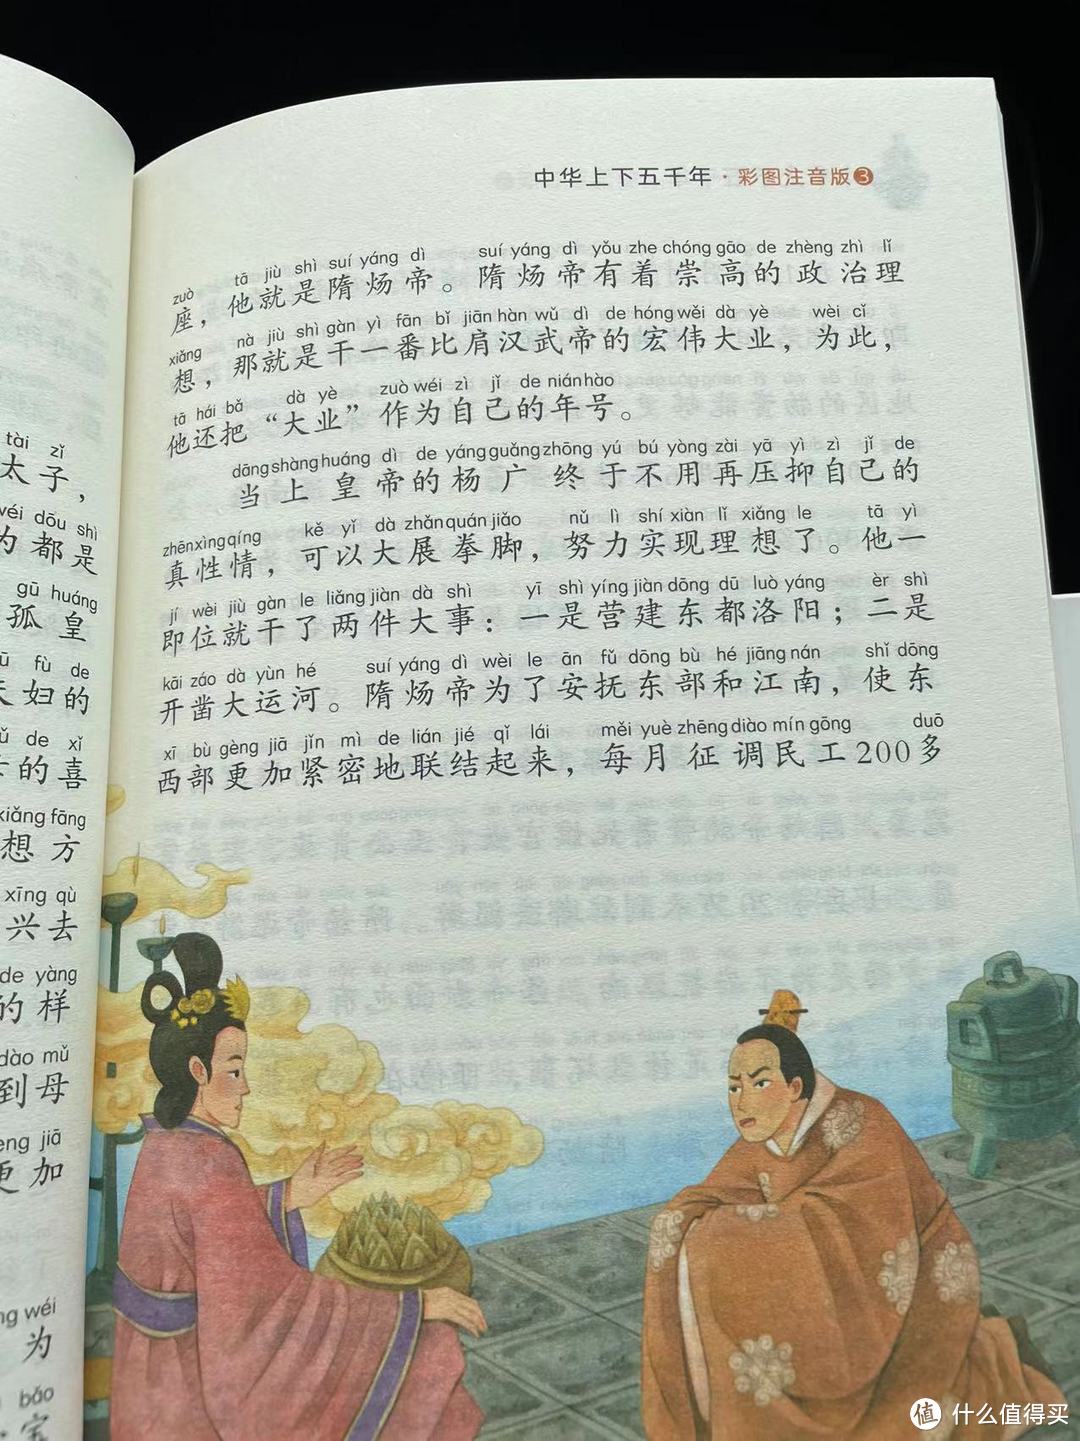 陪娃一起读上下五千年之杨广的大功与大过